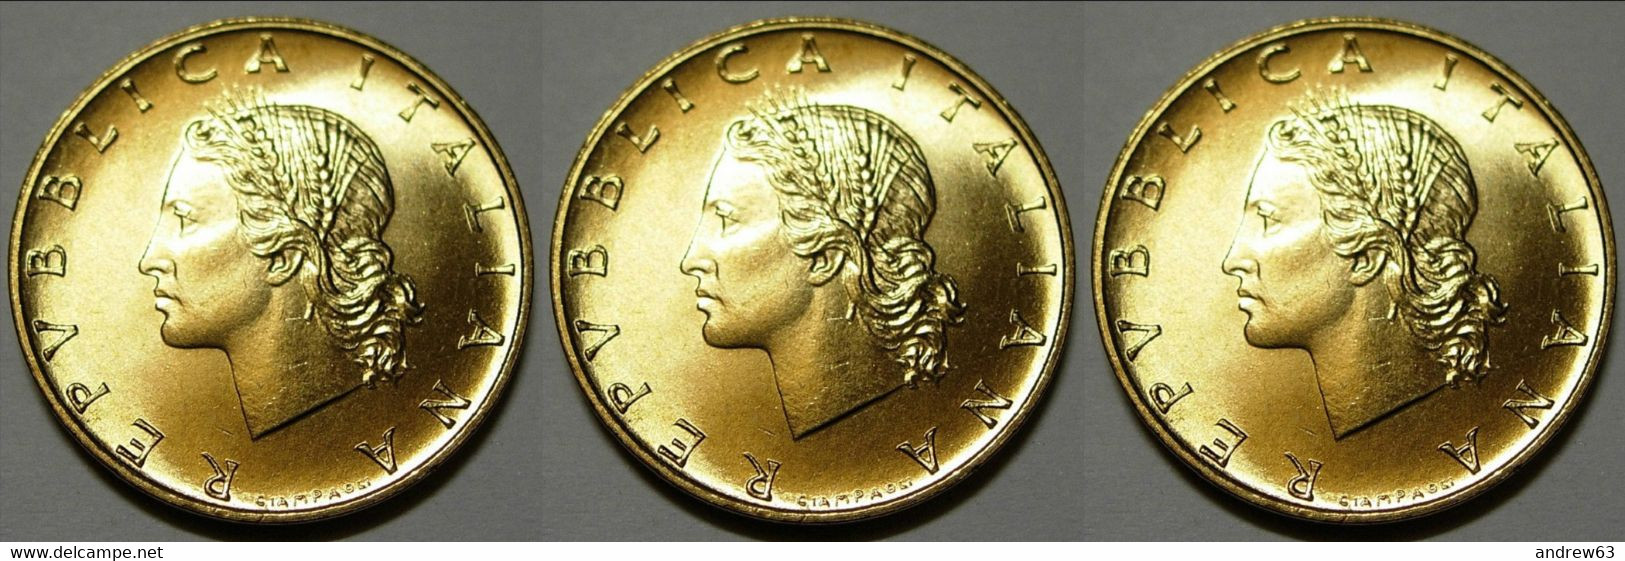 ITALIA - Lire 20 1990 - FDC/Unc Da Rotolino/from Roll 3 Monete/3 Coins - 20 Liras